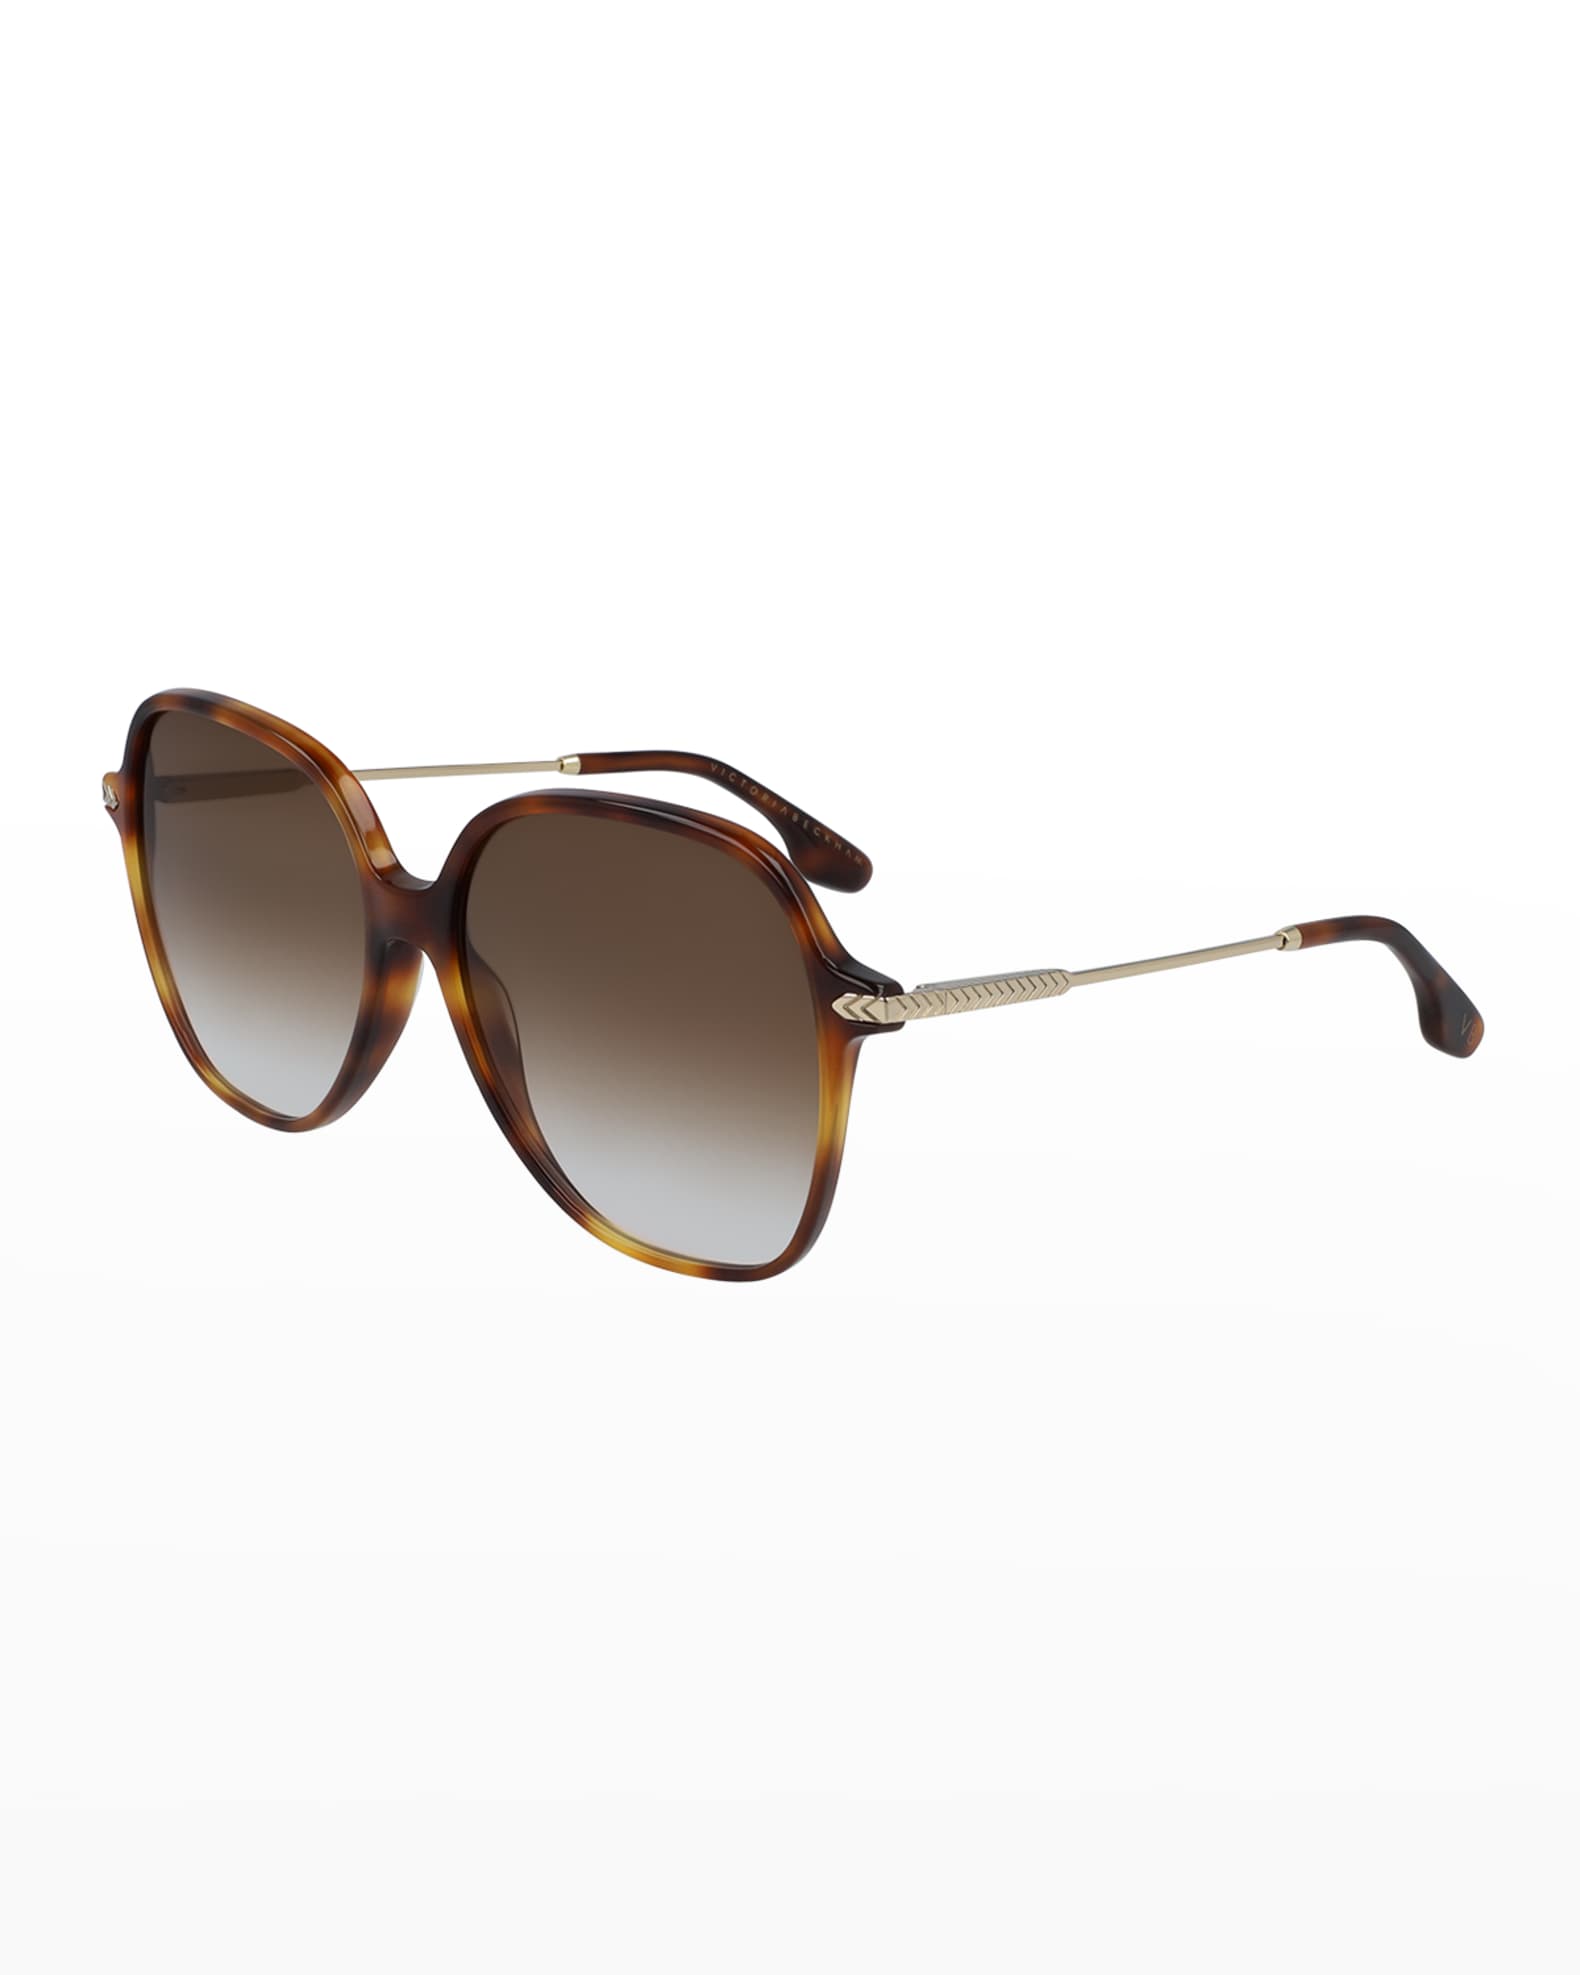 Victoria Beckham Chevron Square Meta/Acetate Sunglasses | Neiman Marcus